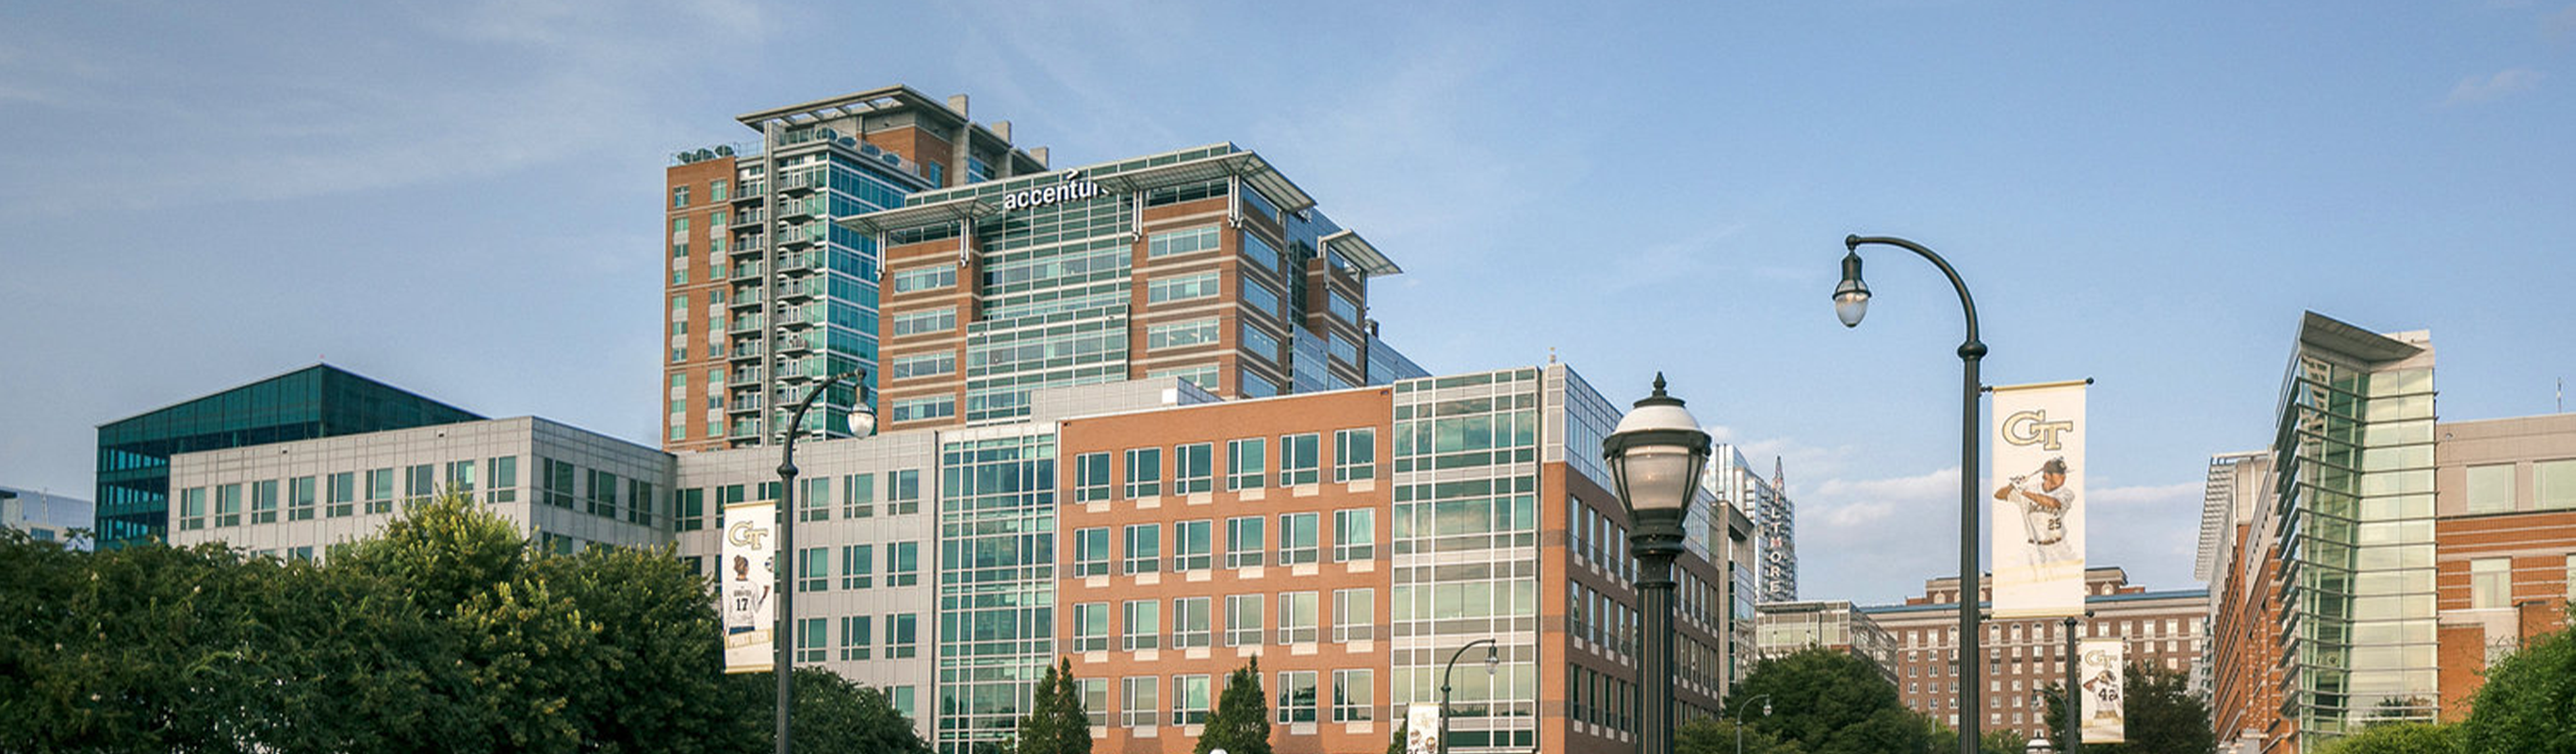 The Accenture's Atlanta hub building in Tech Square